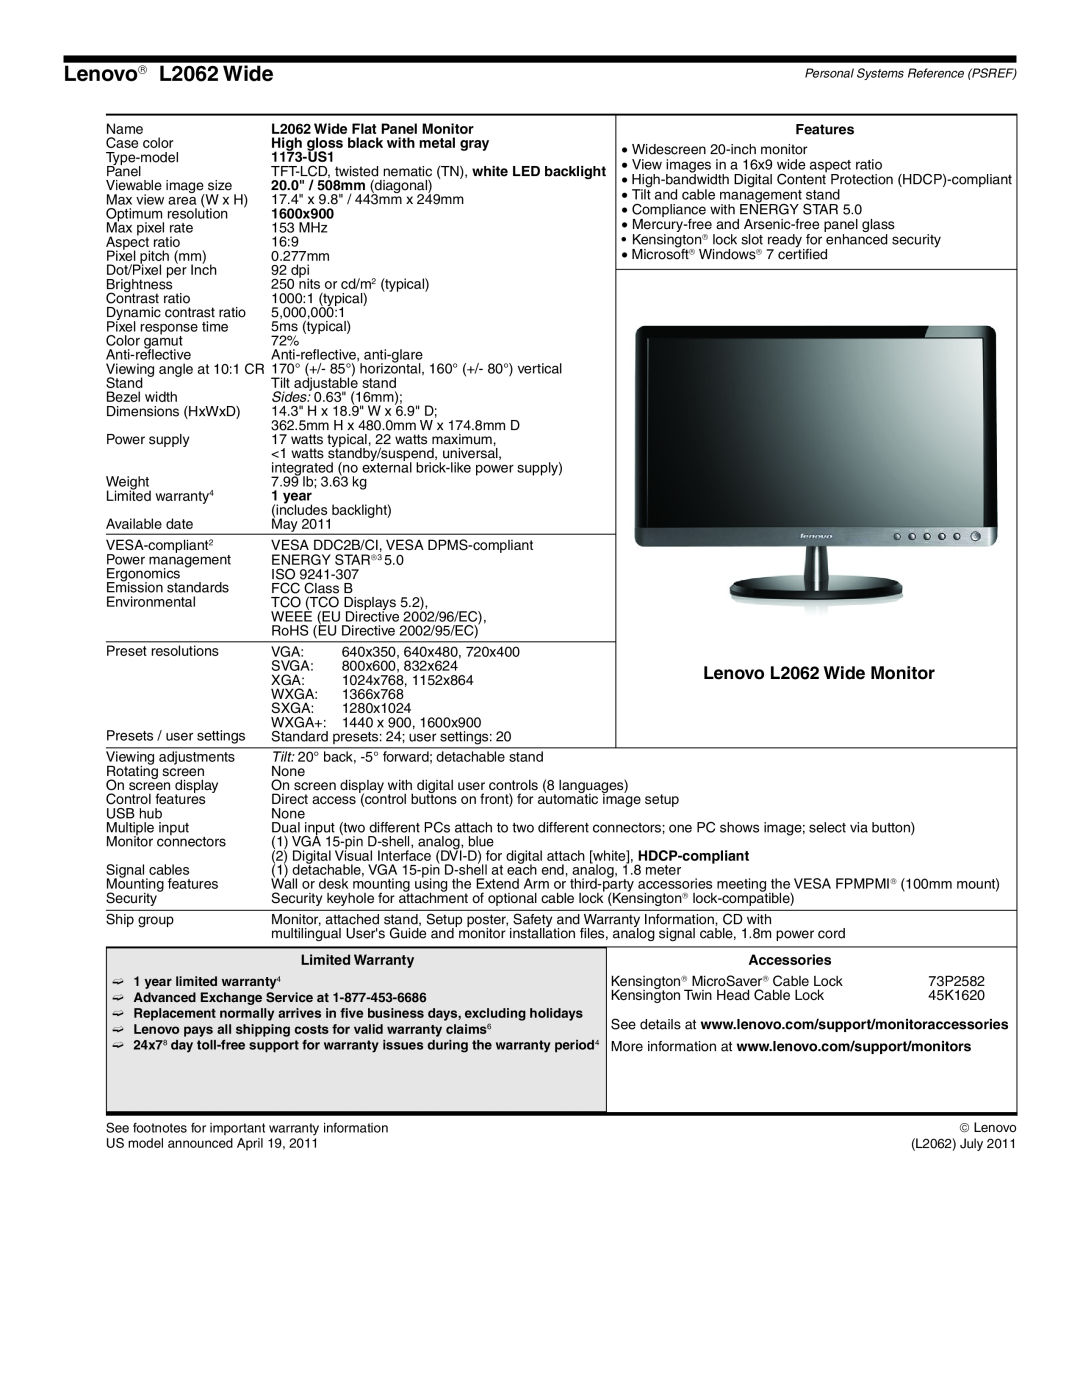 Lenovo L2363D manual Lenovo→ L2062 Wide, Lenovo L2062 Wide Monitor 